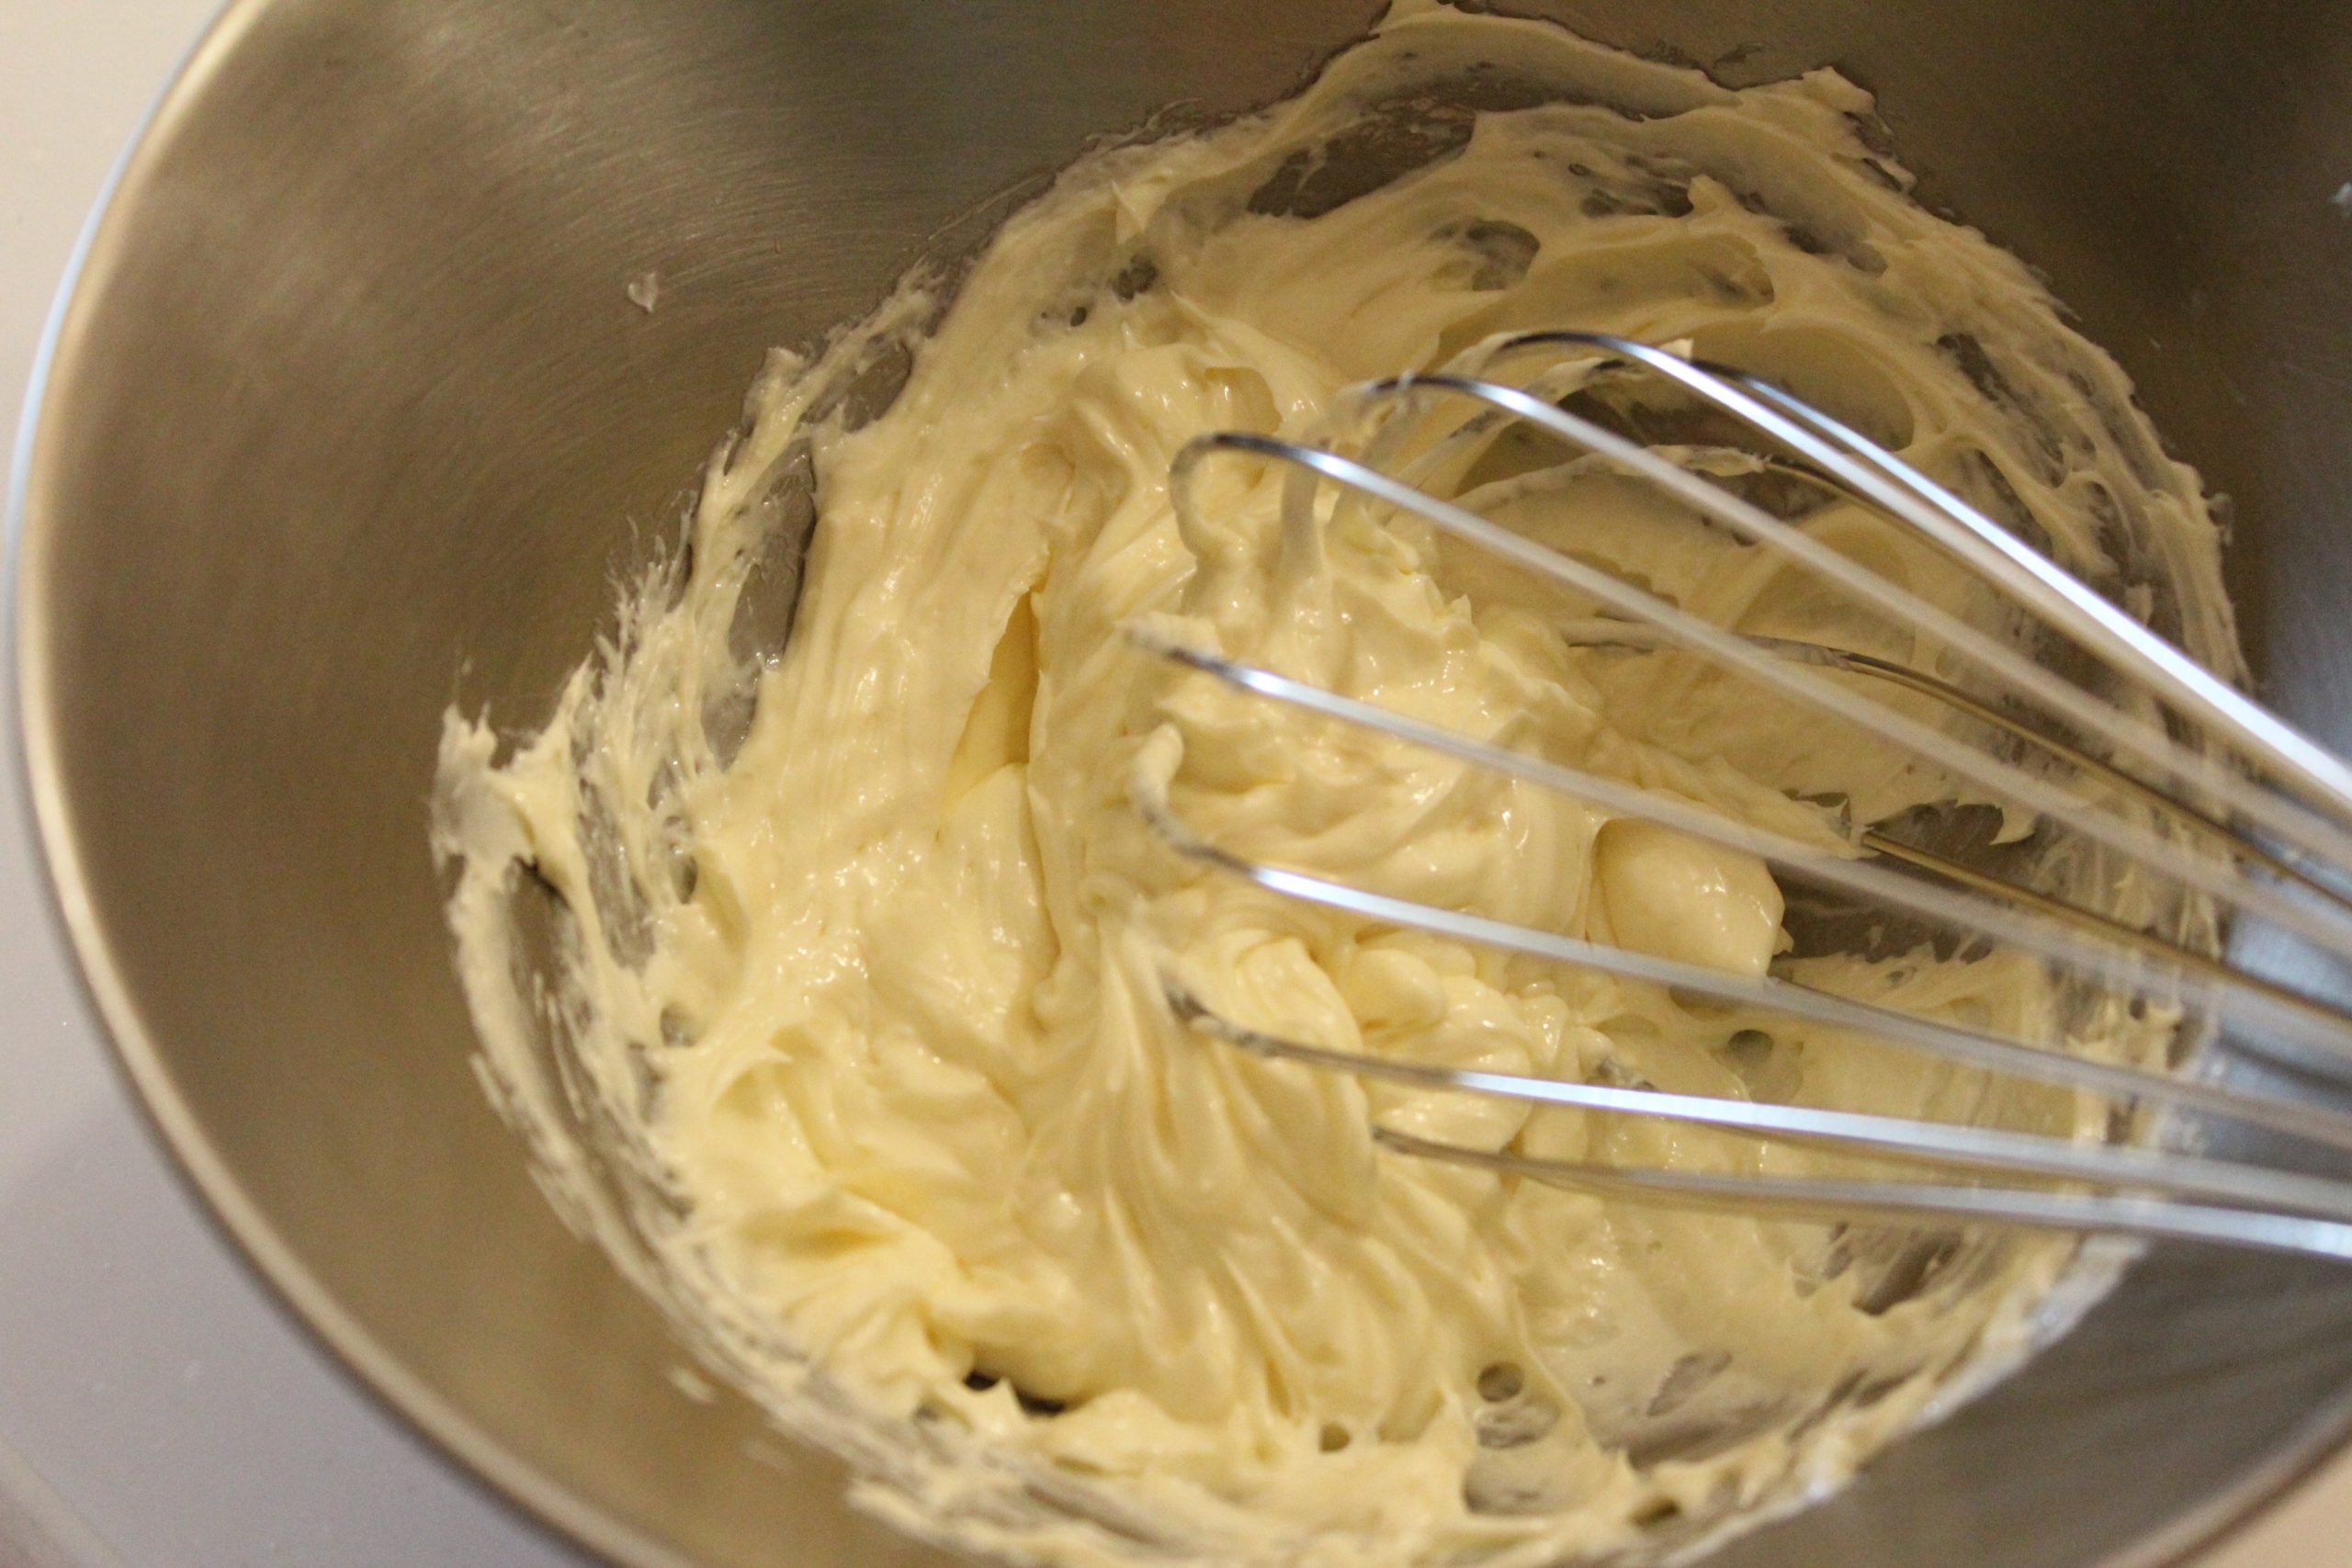 クリームチーズをホイッパーでなめらかにとく。
※固い場合はレンジで10～20秒加熱する。加熱しすぎに注意！
グラニュー糖、たまご、生クリームを加え、都度ホイッパーで混ぜる。薄力粉はふるって加え、ダマにならないようにする。
